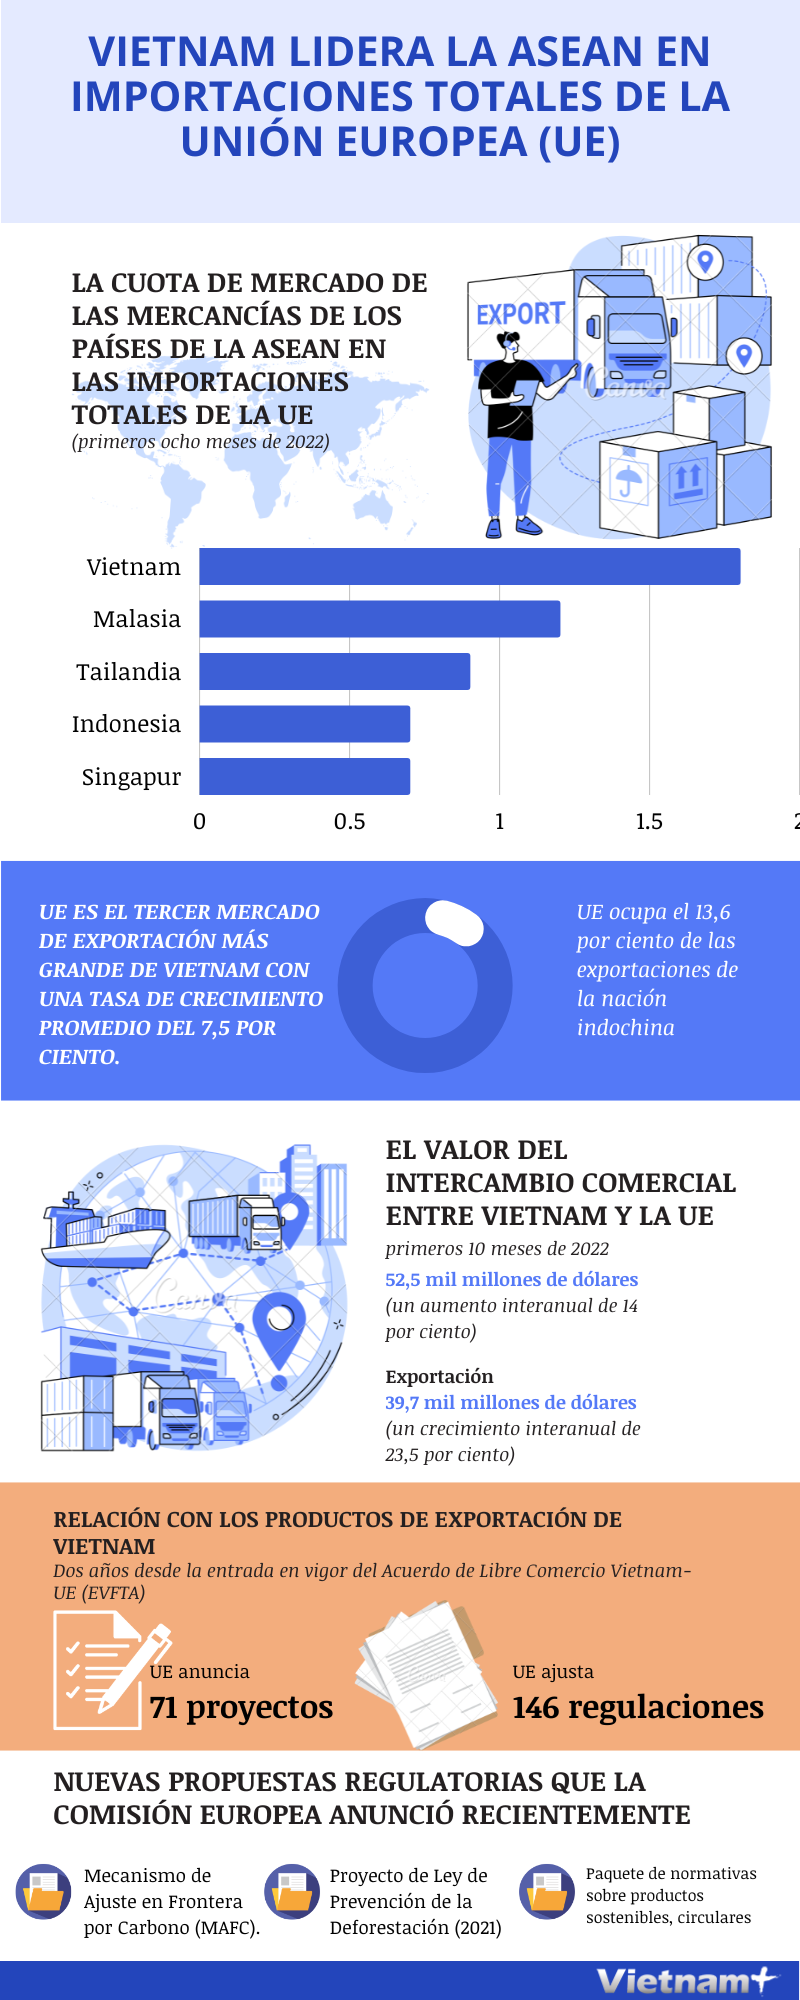 Vietnam lidera la ASEAN en importaciones totales de la Union Europea hinh anh 1